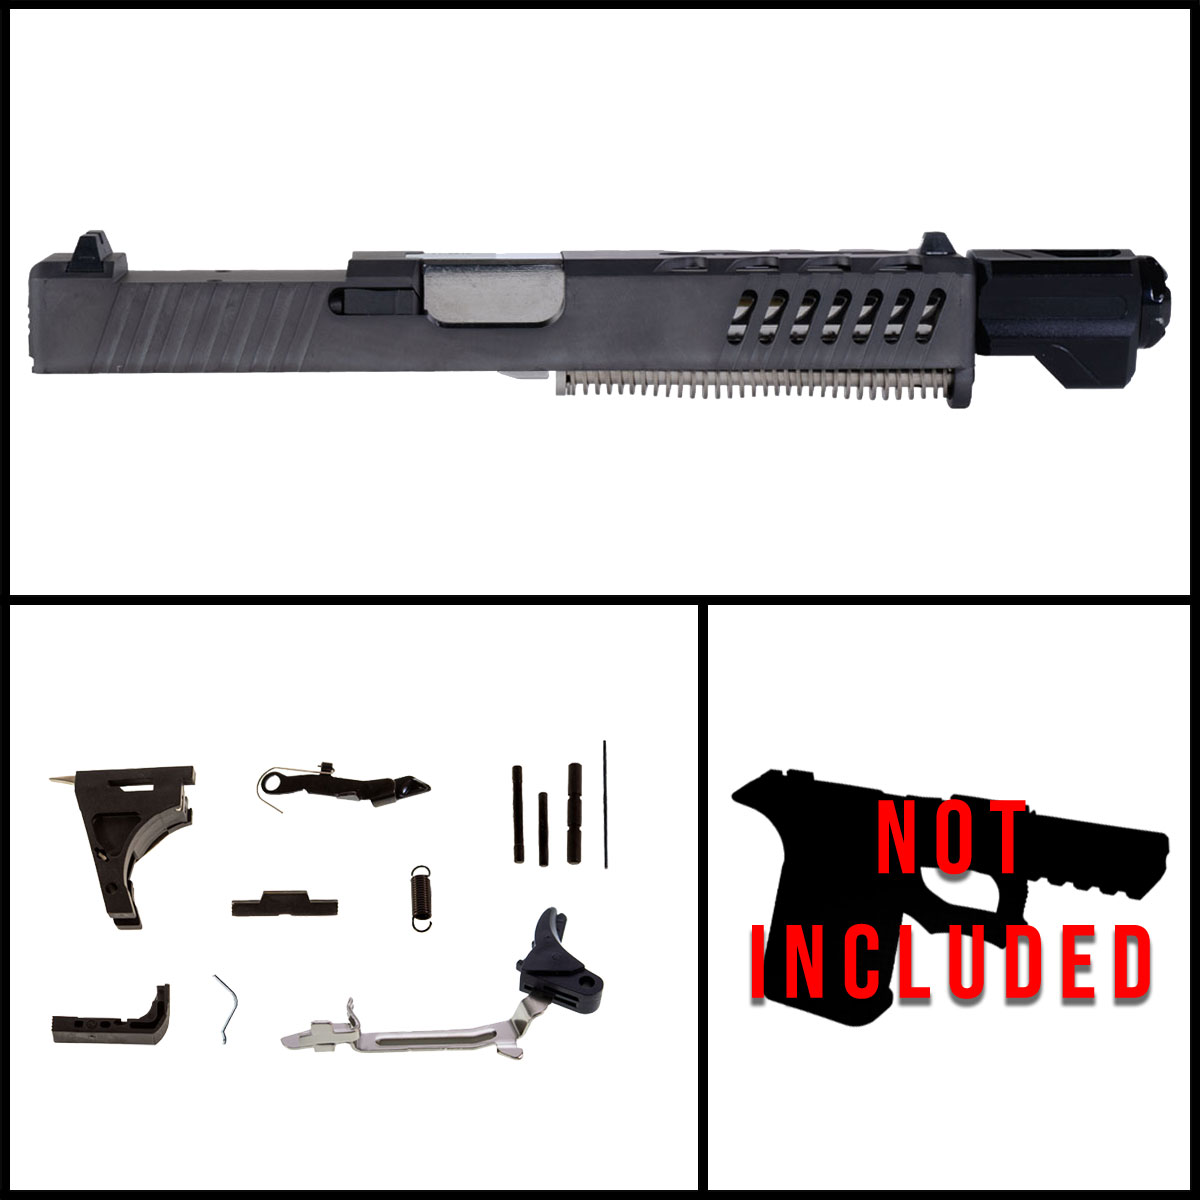 DTT 'Fastlink' 9mm Full Pistol Build Kit (Everything Minus Frame) - Glock 17 Gen 1-3 Compatible